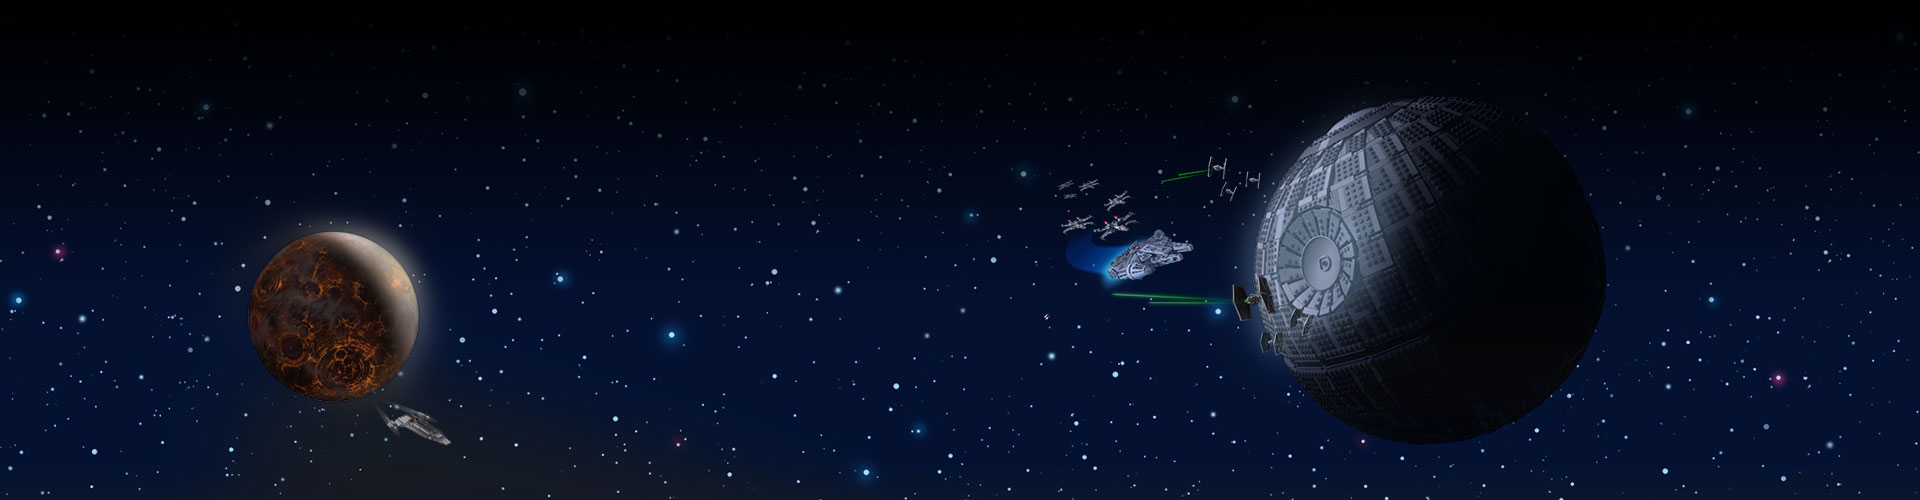 Deux bases ennemies dans l’espace avec des étoiles en arrière-plan.